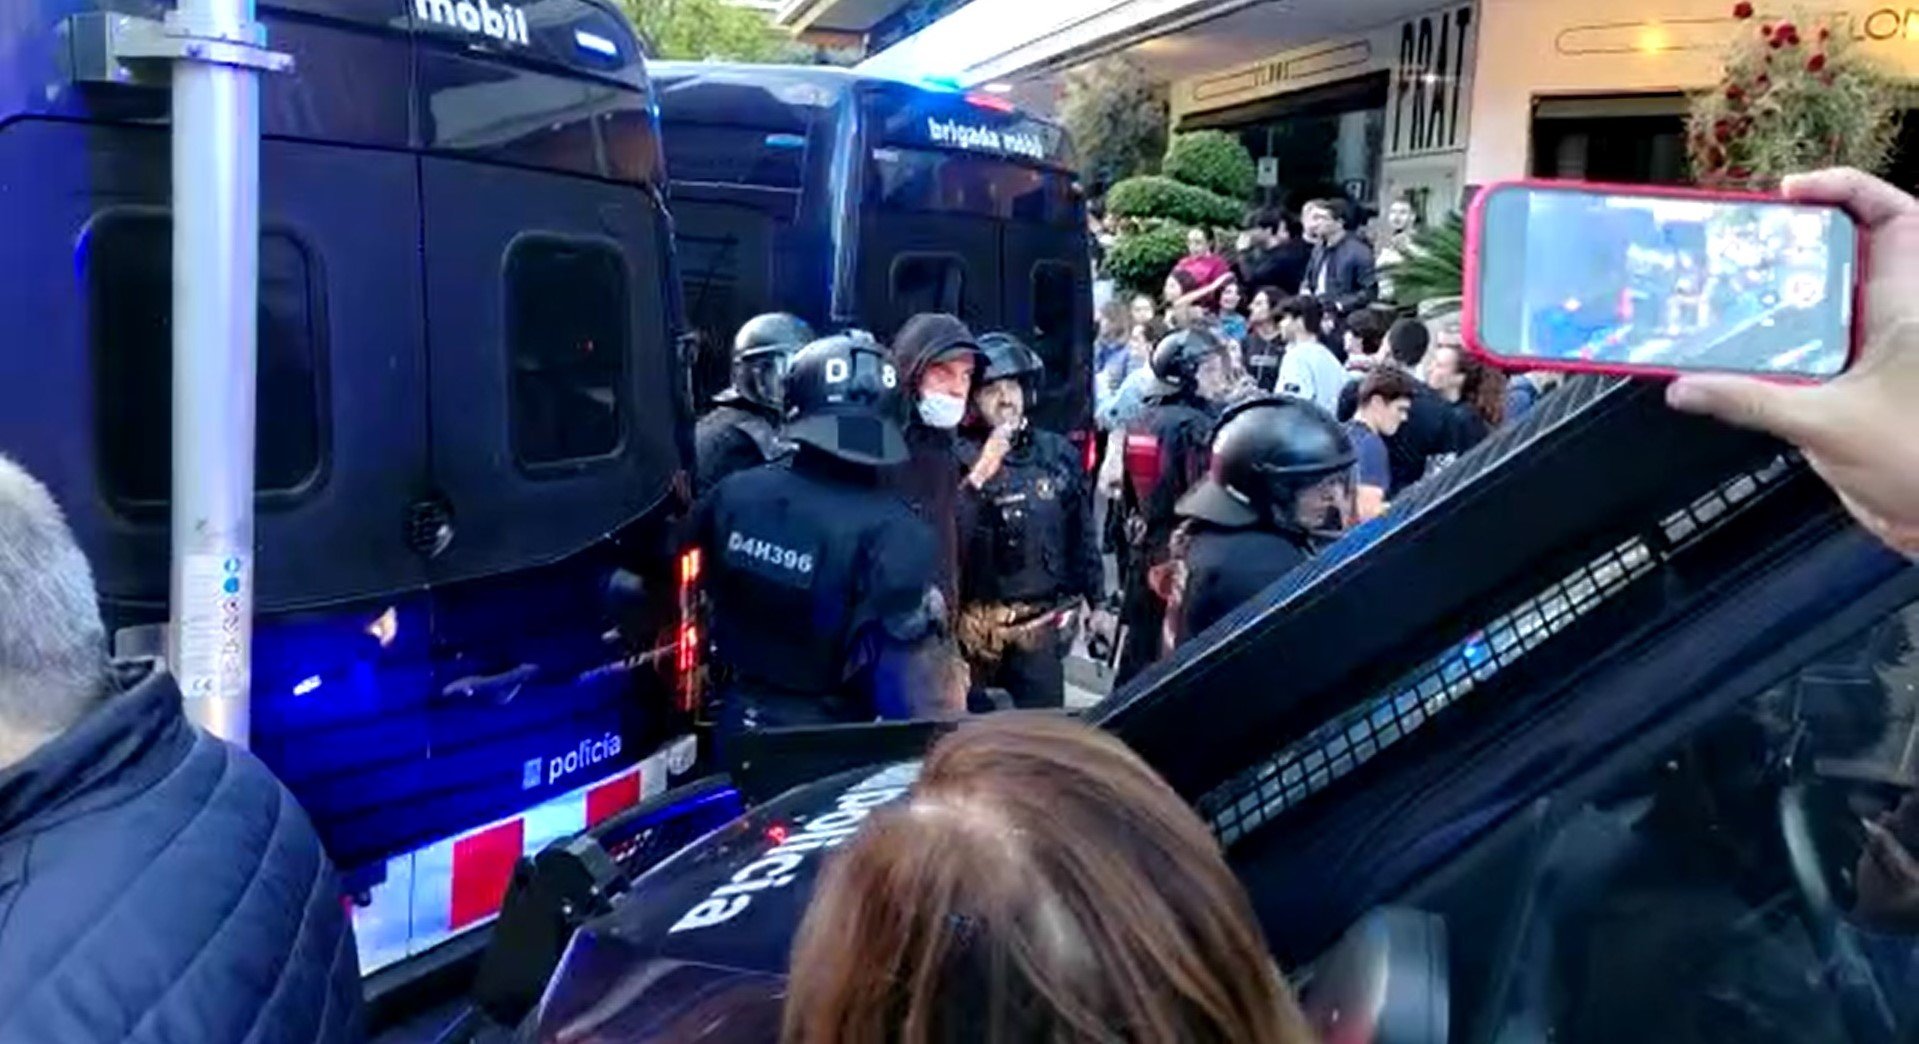 Policies s'enfronten amb una trentena d'okupes a la Bonanova | VÍDEO